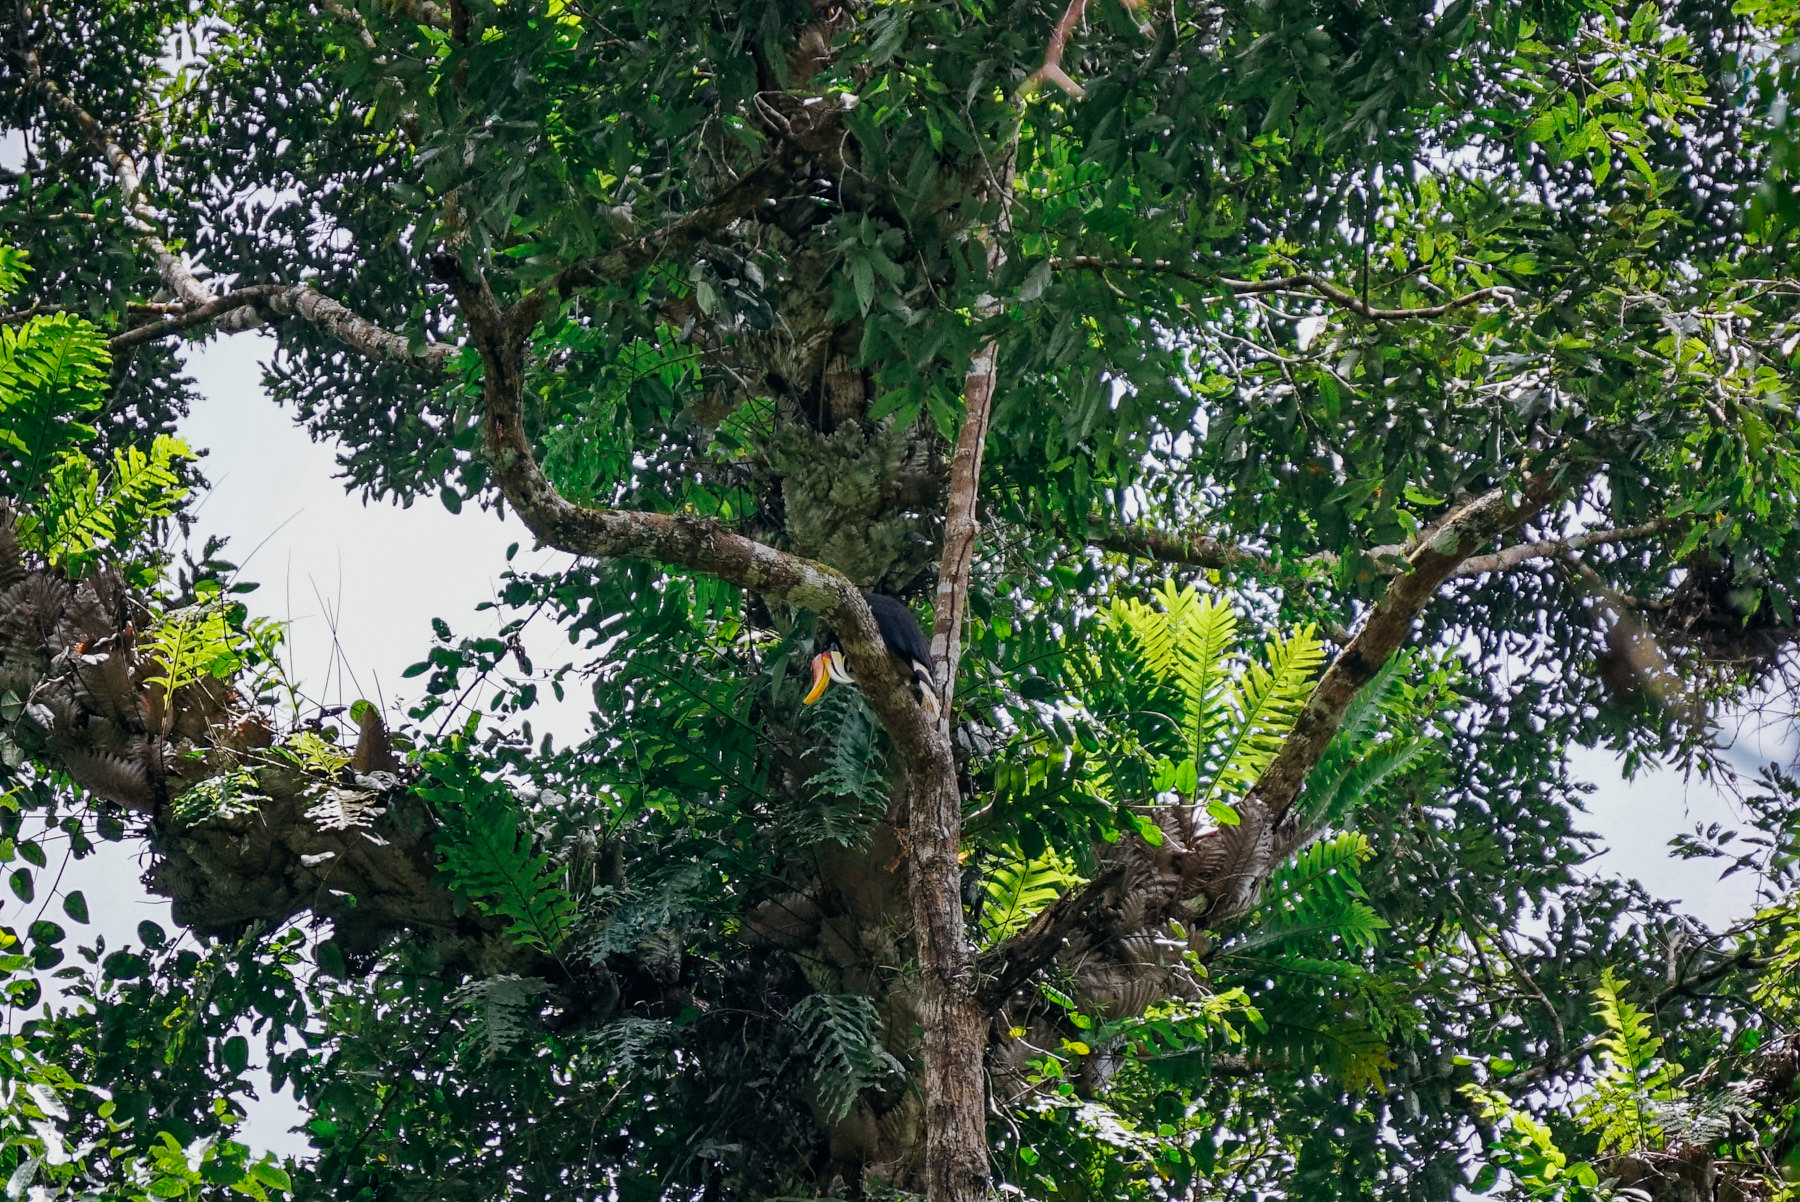 Wild hornbill in the jungle near Ketambe